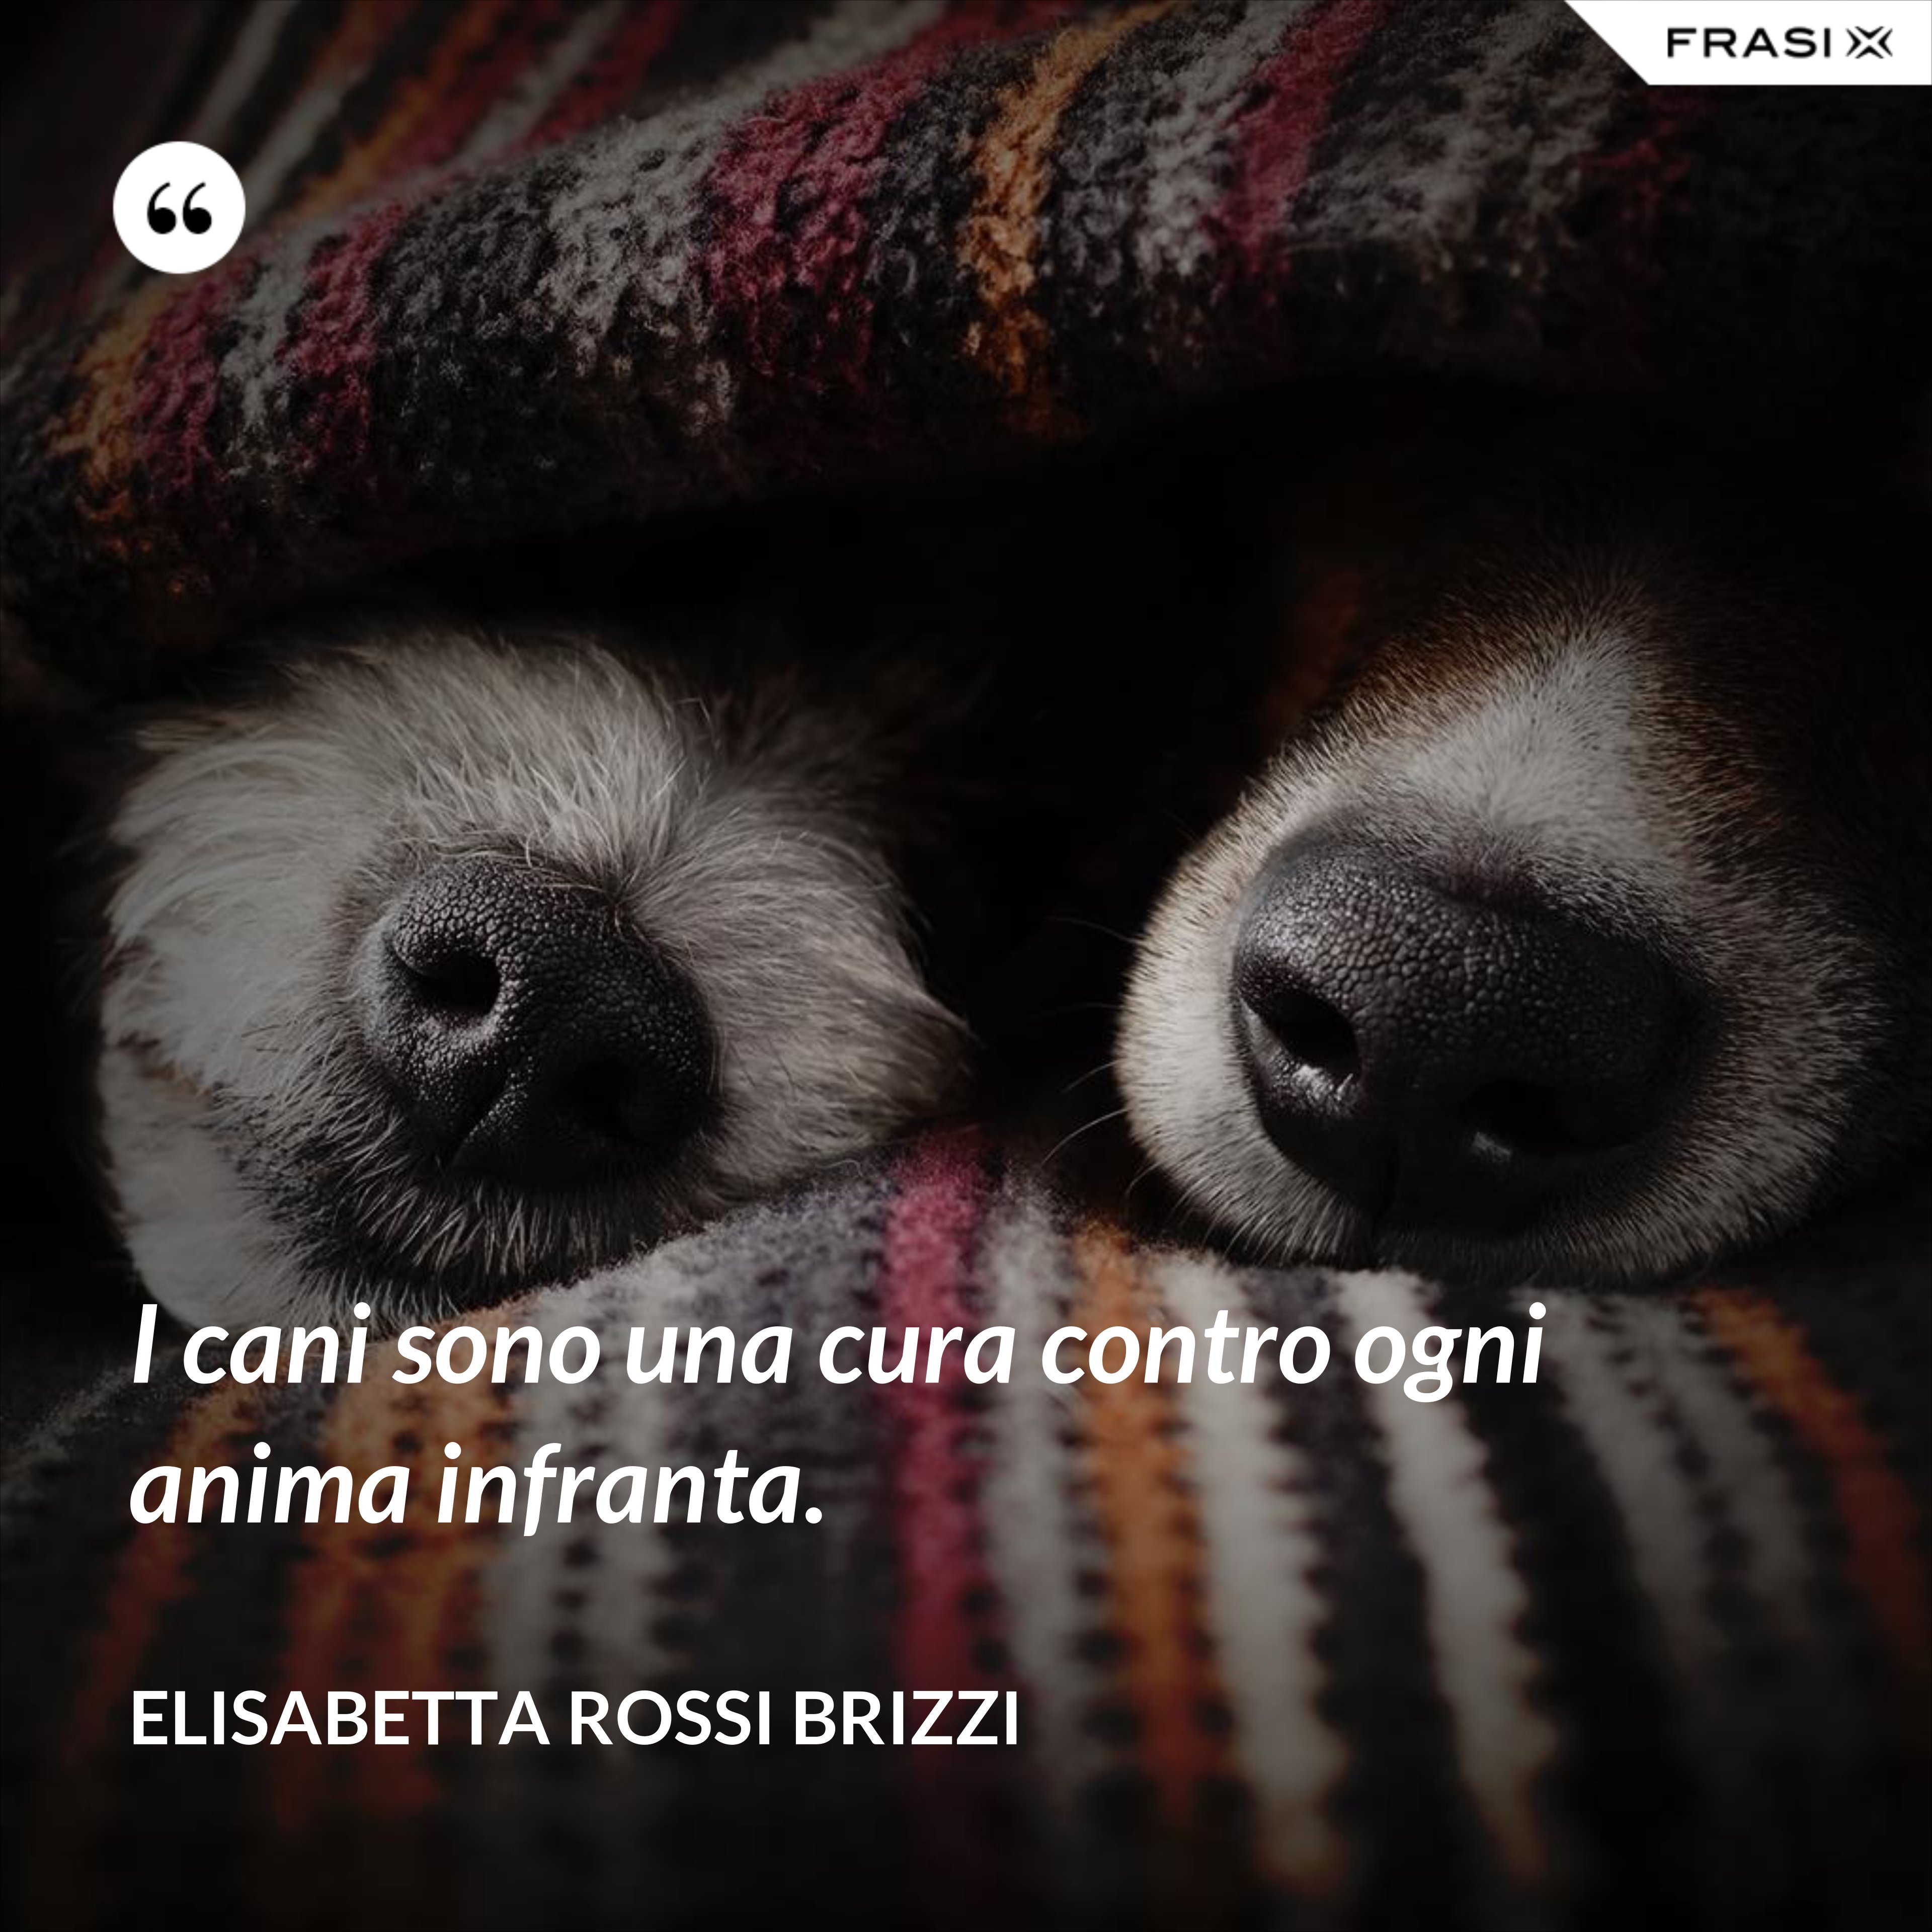 I cani sono una cura contro ogni anima infranta. - Elisabetta Rossi Brizzi